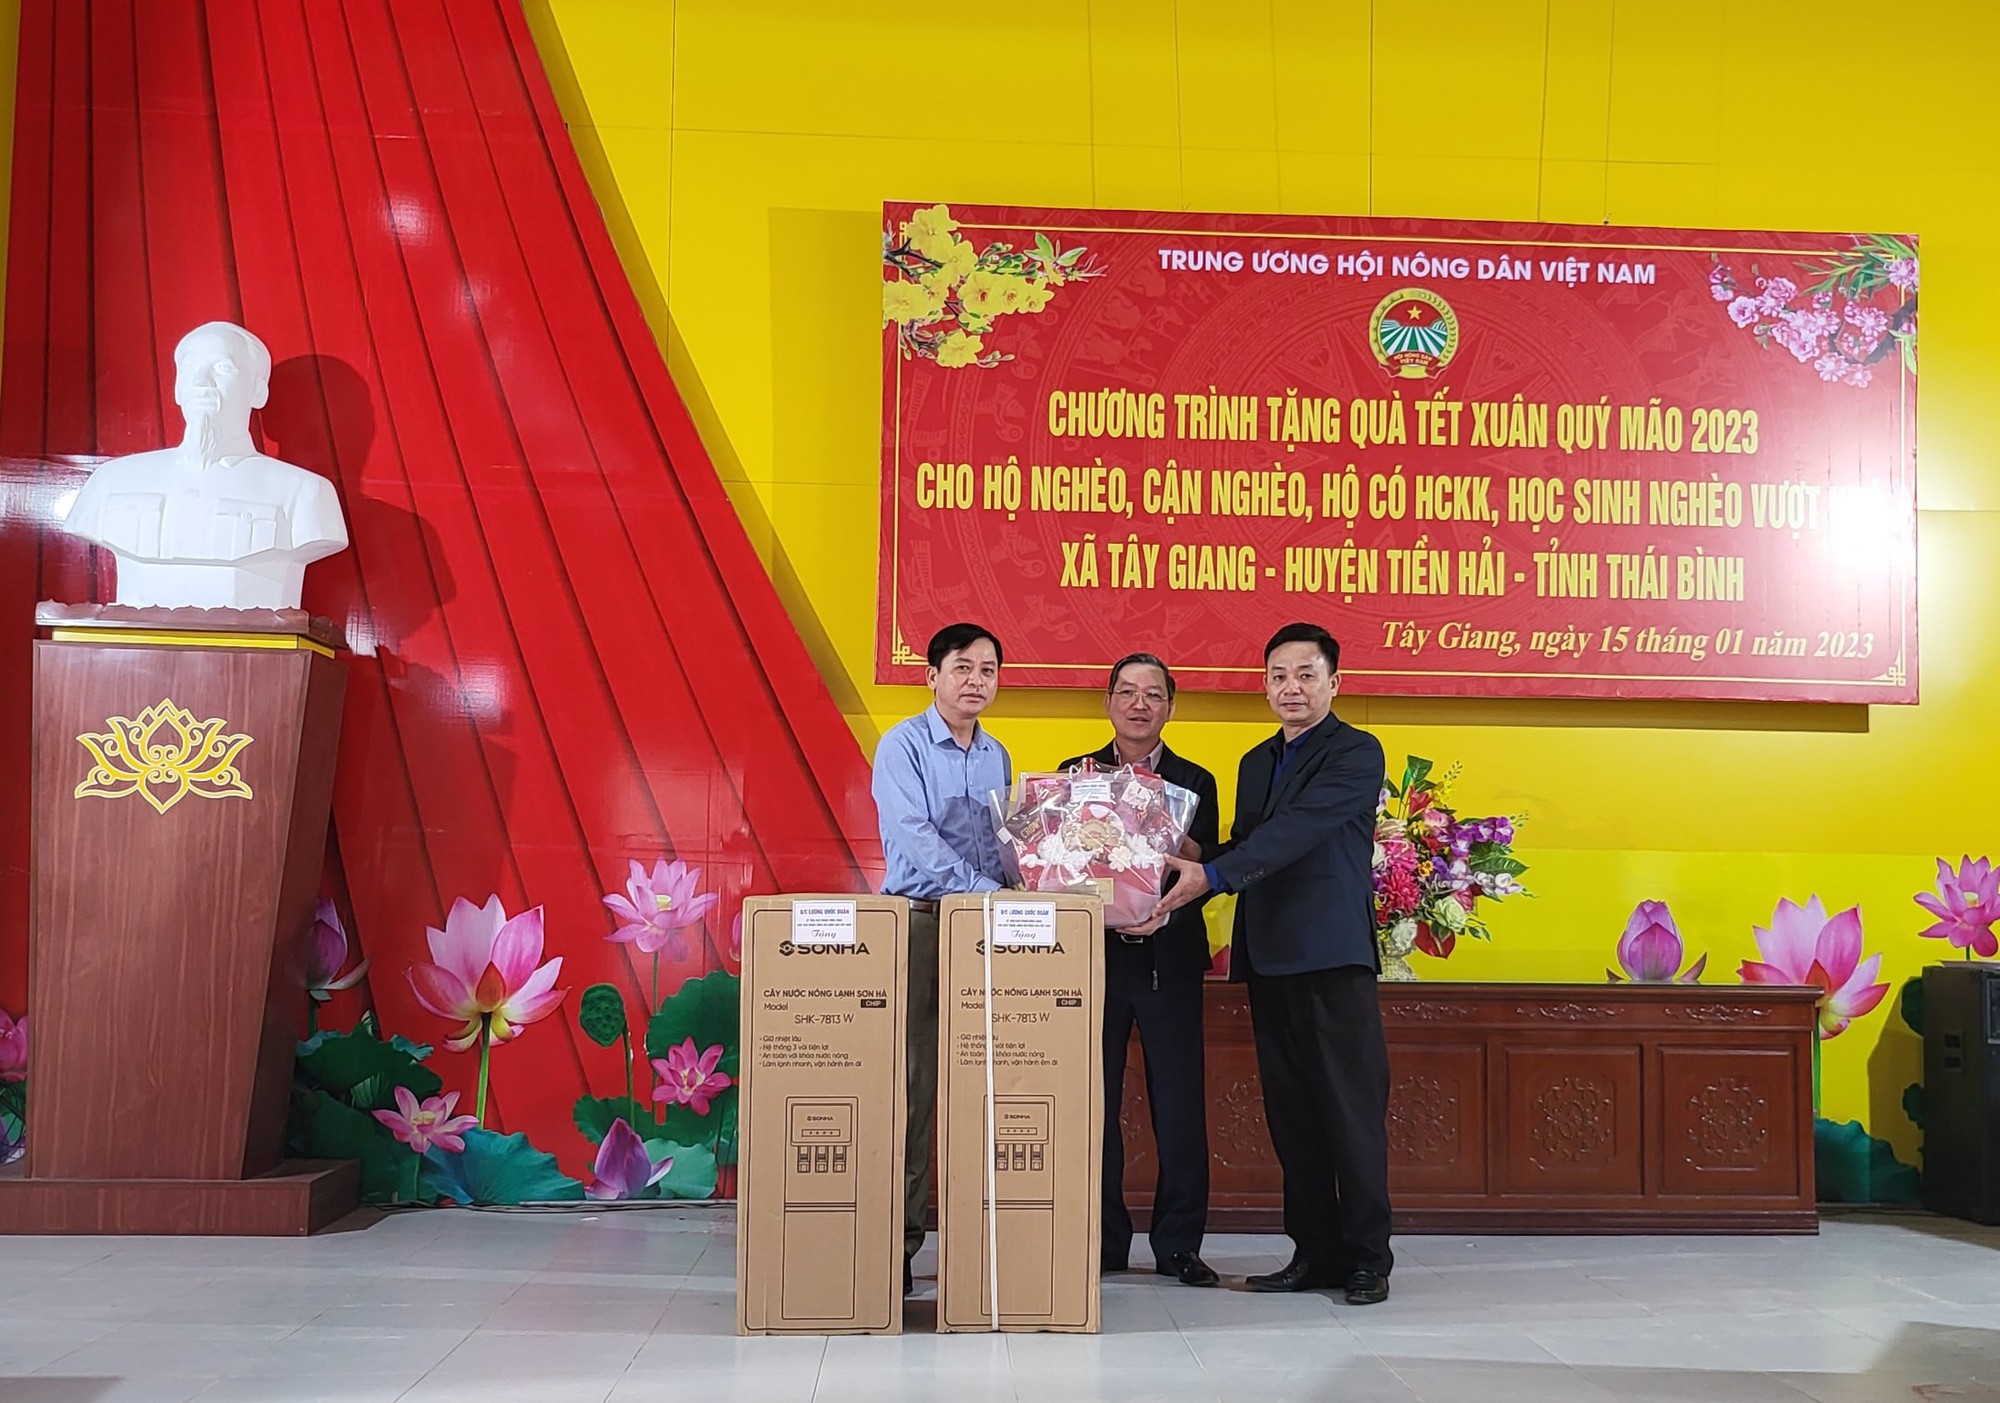 Chủ tịch Trung ương Hội Nông dân Việt Nam Lương Quốc Đoàn tặng quà Tết tại Tiền Hải, Thái Bình - Ảnh 3.